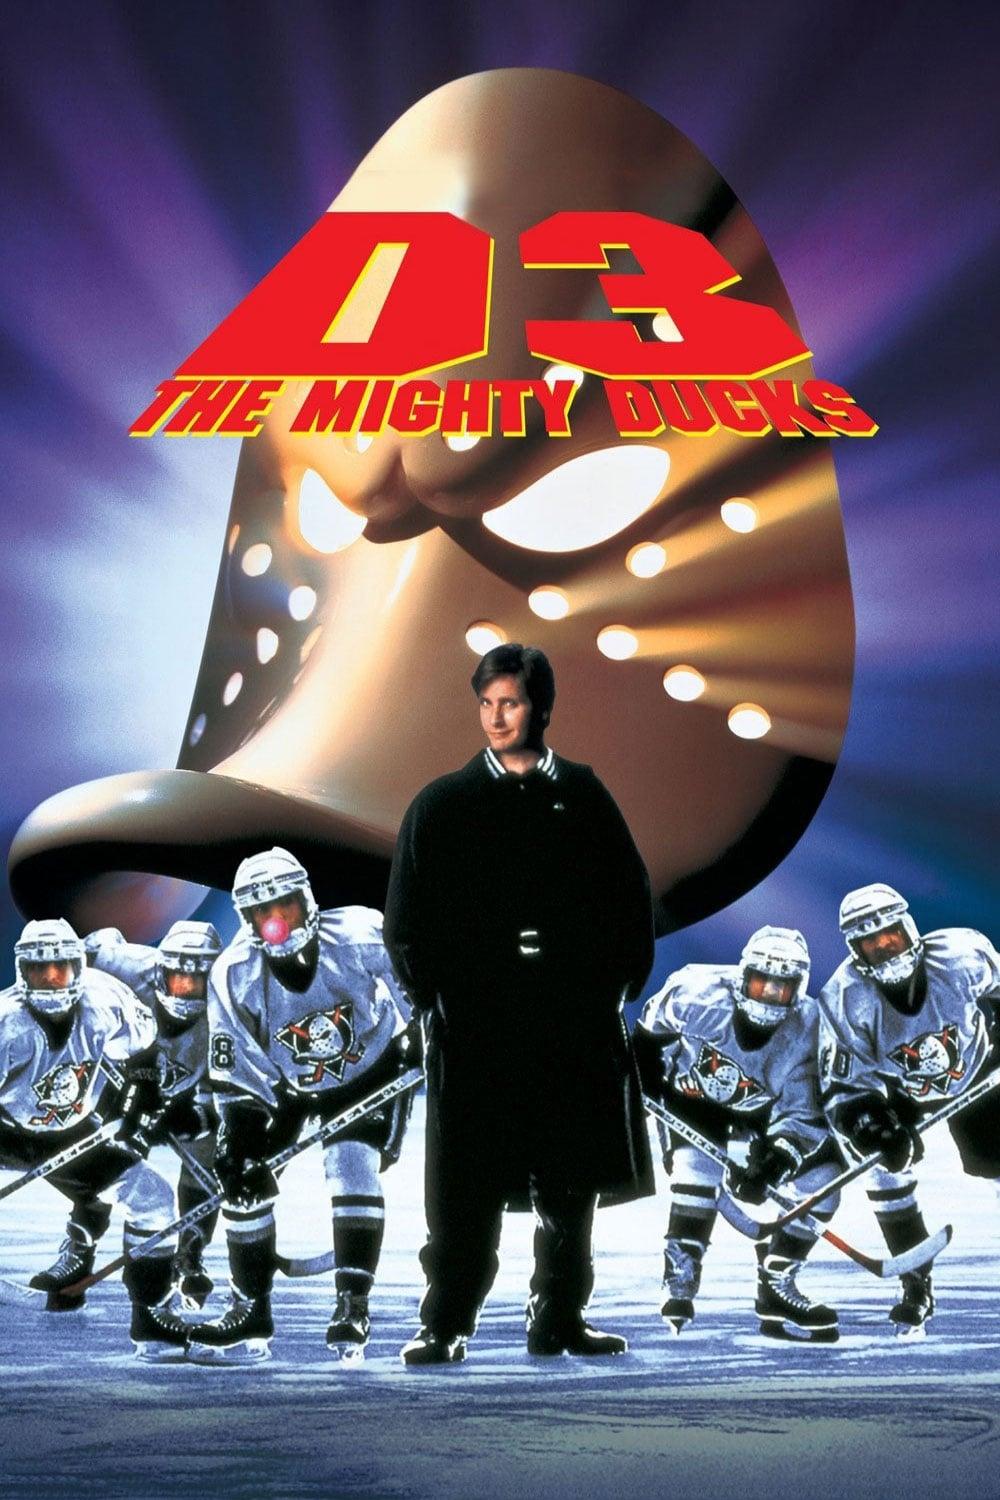 Mighty Ducks 3 - Jetzt mischen sie die Highschool auf poster